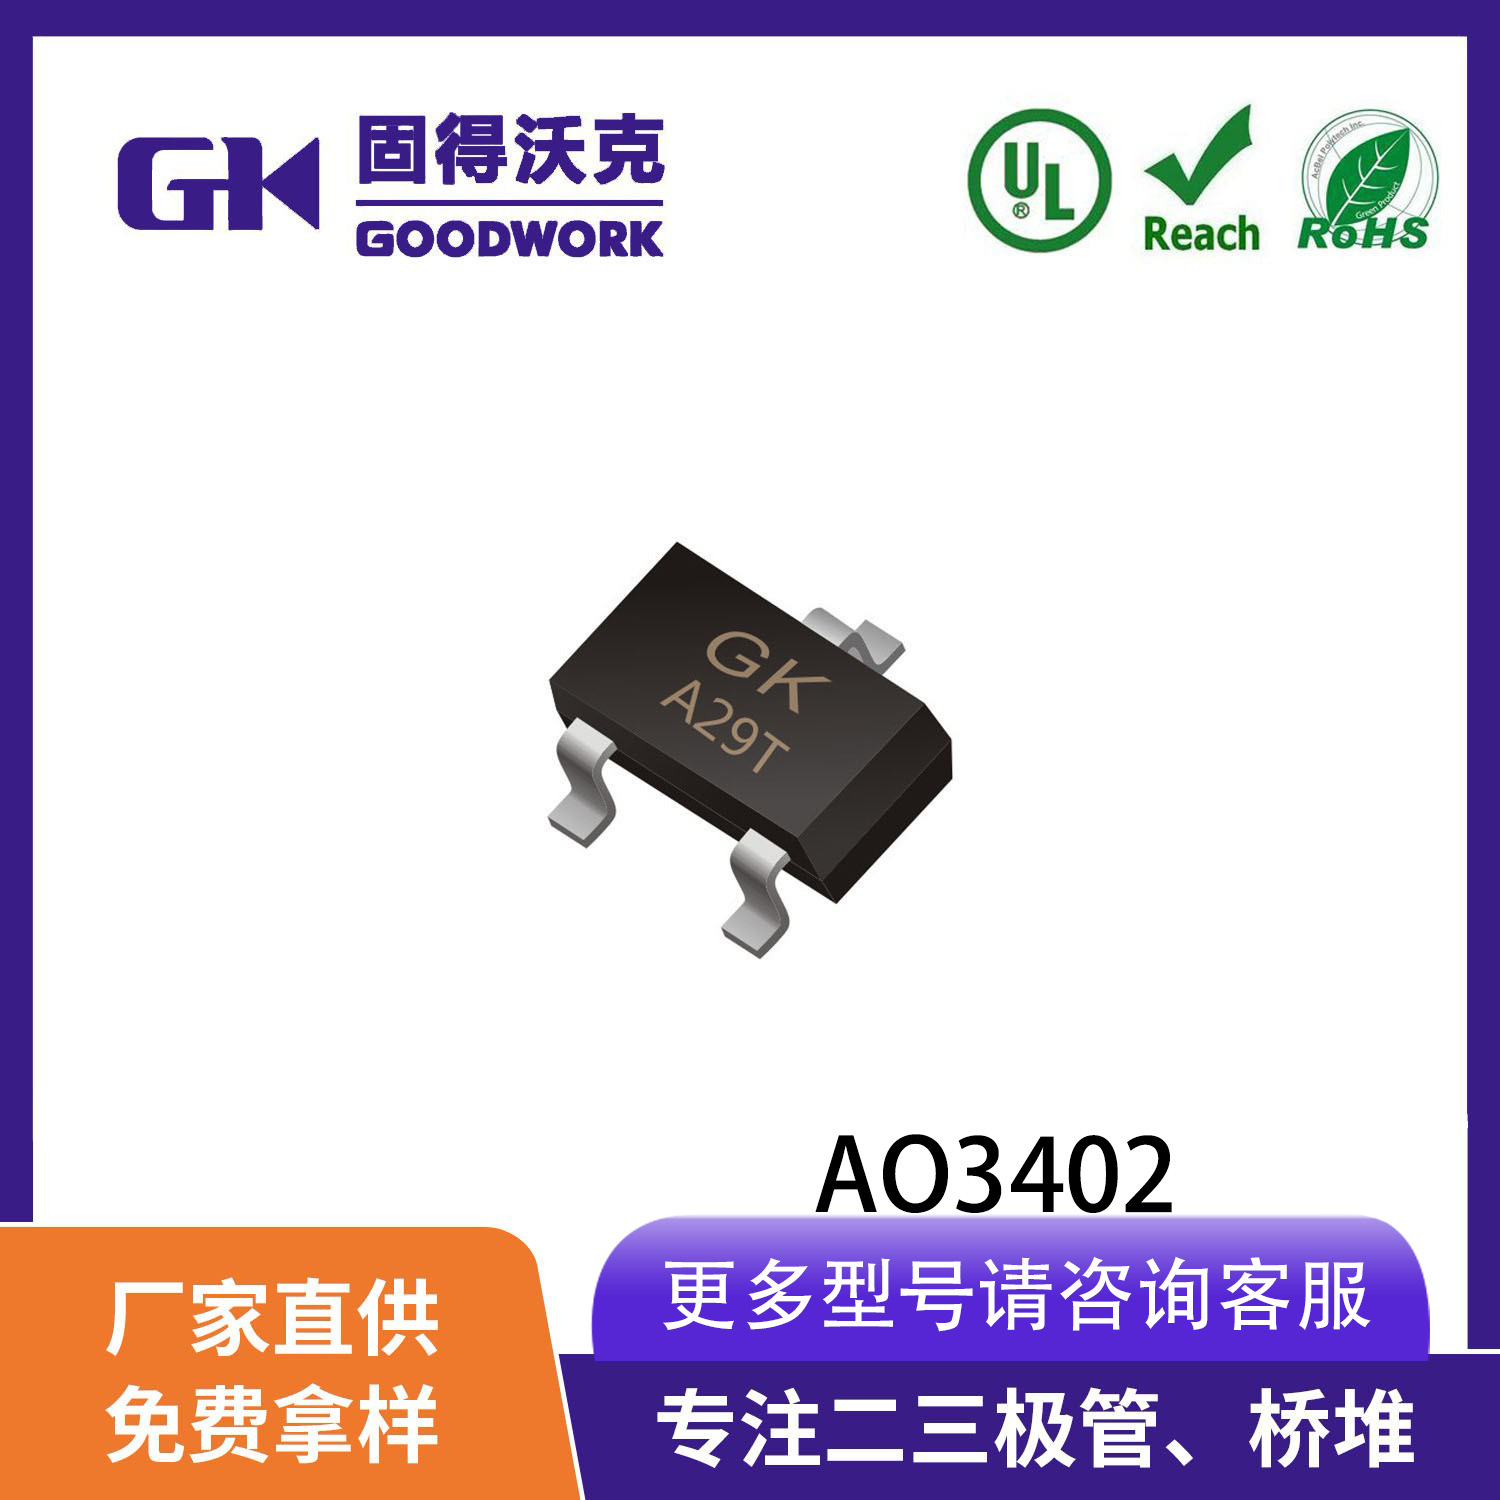 现货供应厂家直销GK品牌AO3402 SOT23封装 4A30V 贴片场效应管